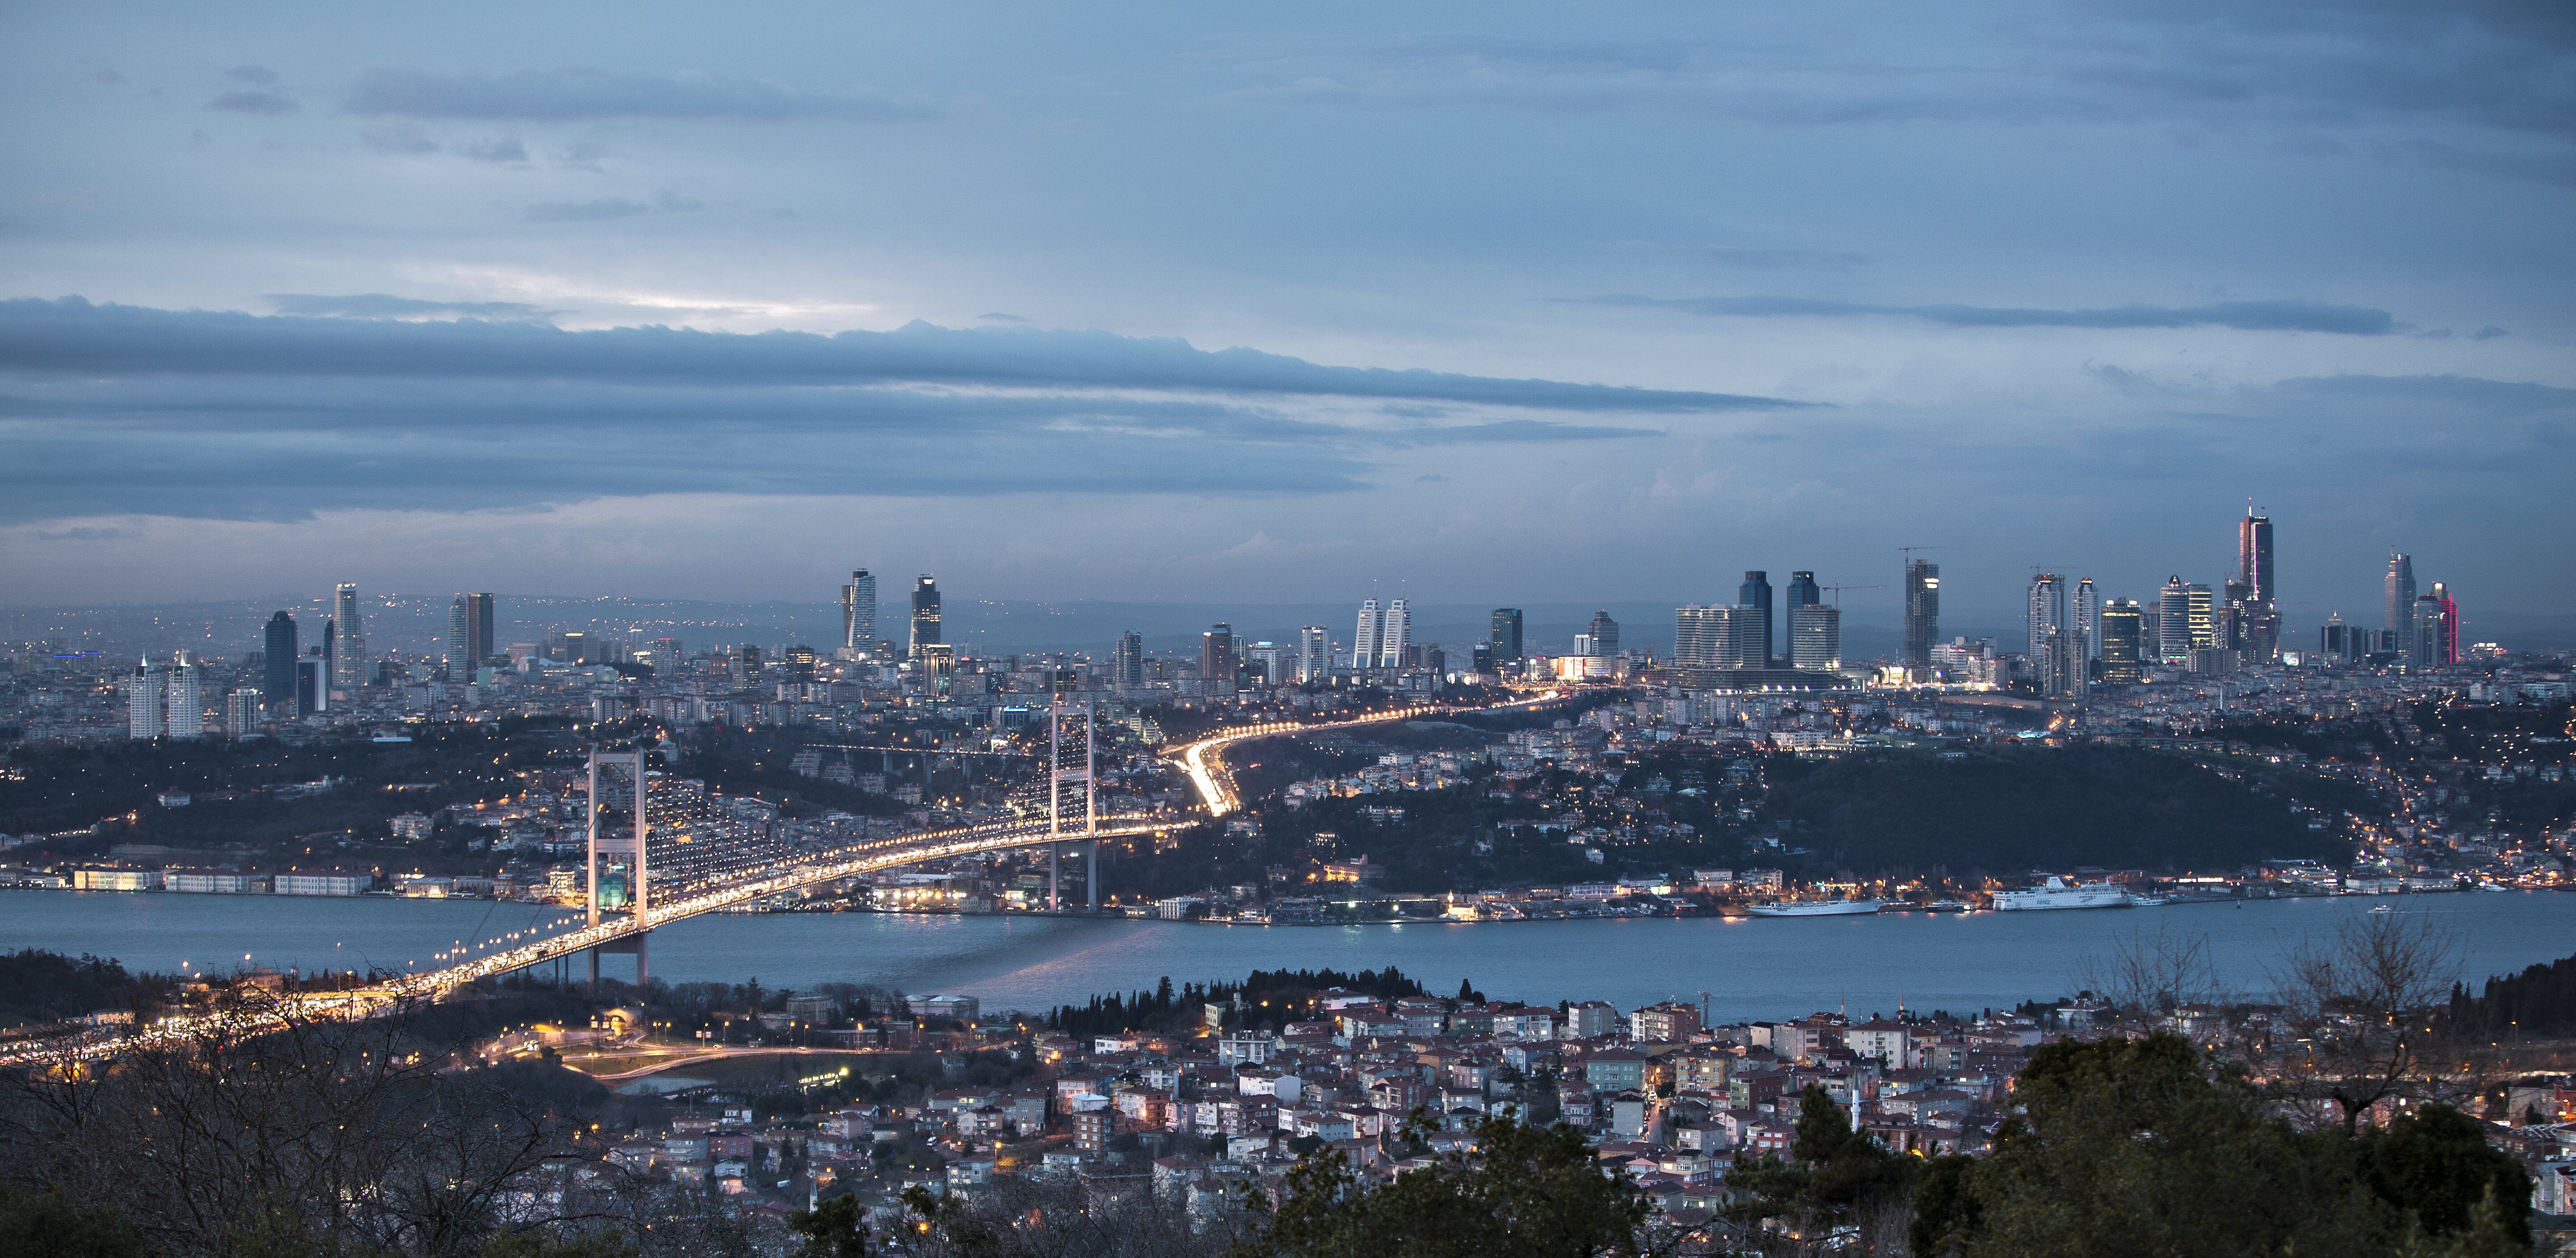 Популярные заставки и фоны Стамбул на компьютер